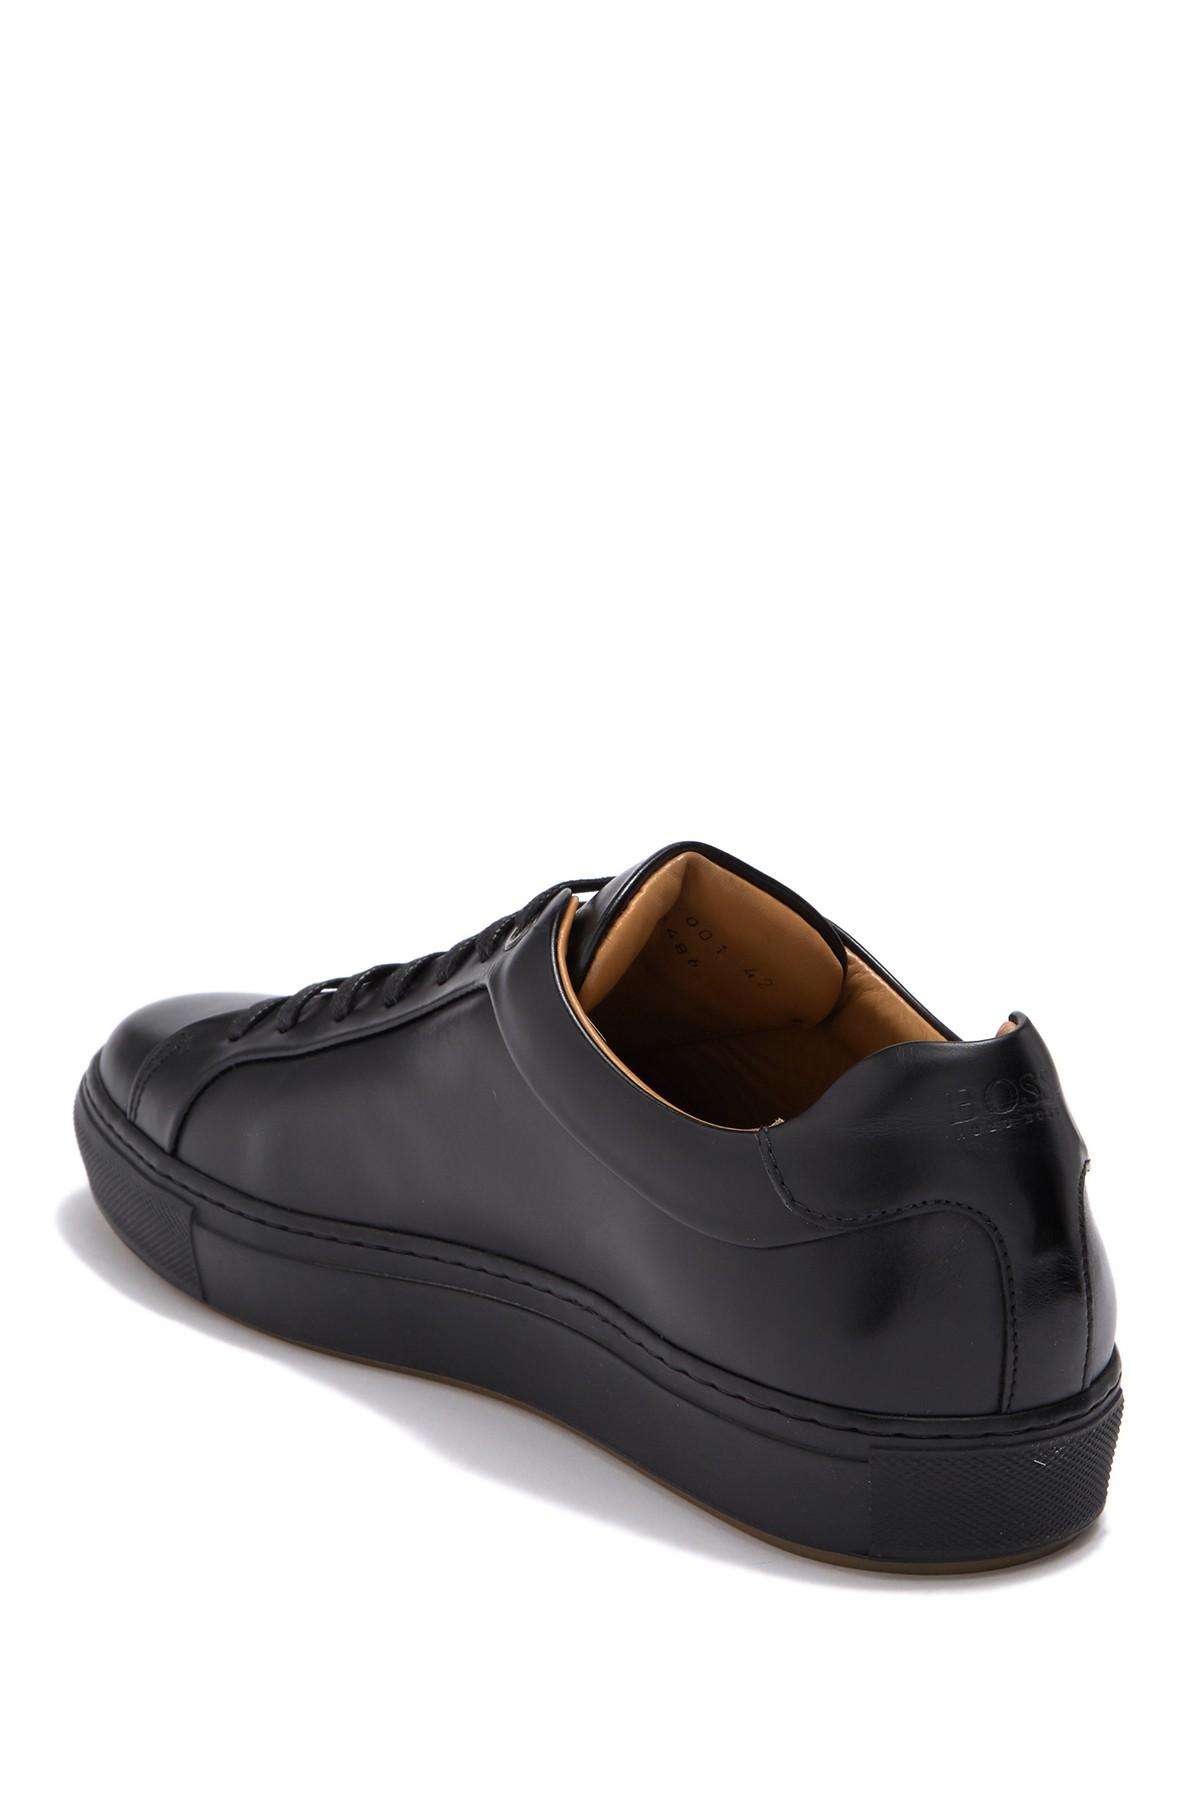 BOSS Mirage Tennis Leather Sneaker in Black for Men - Lyst